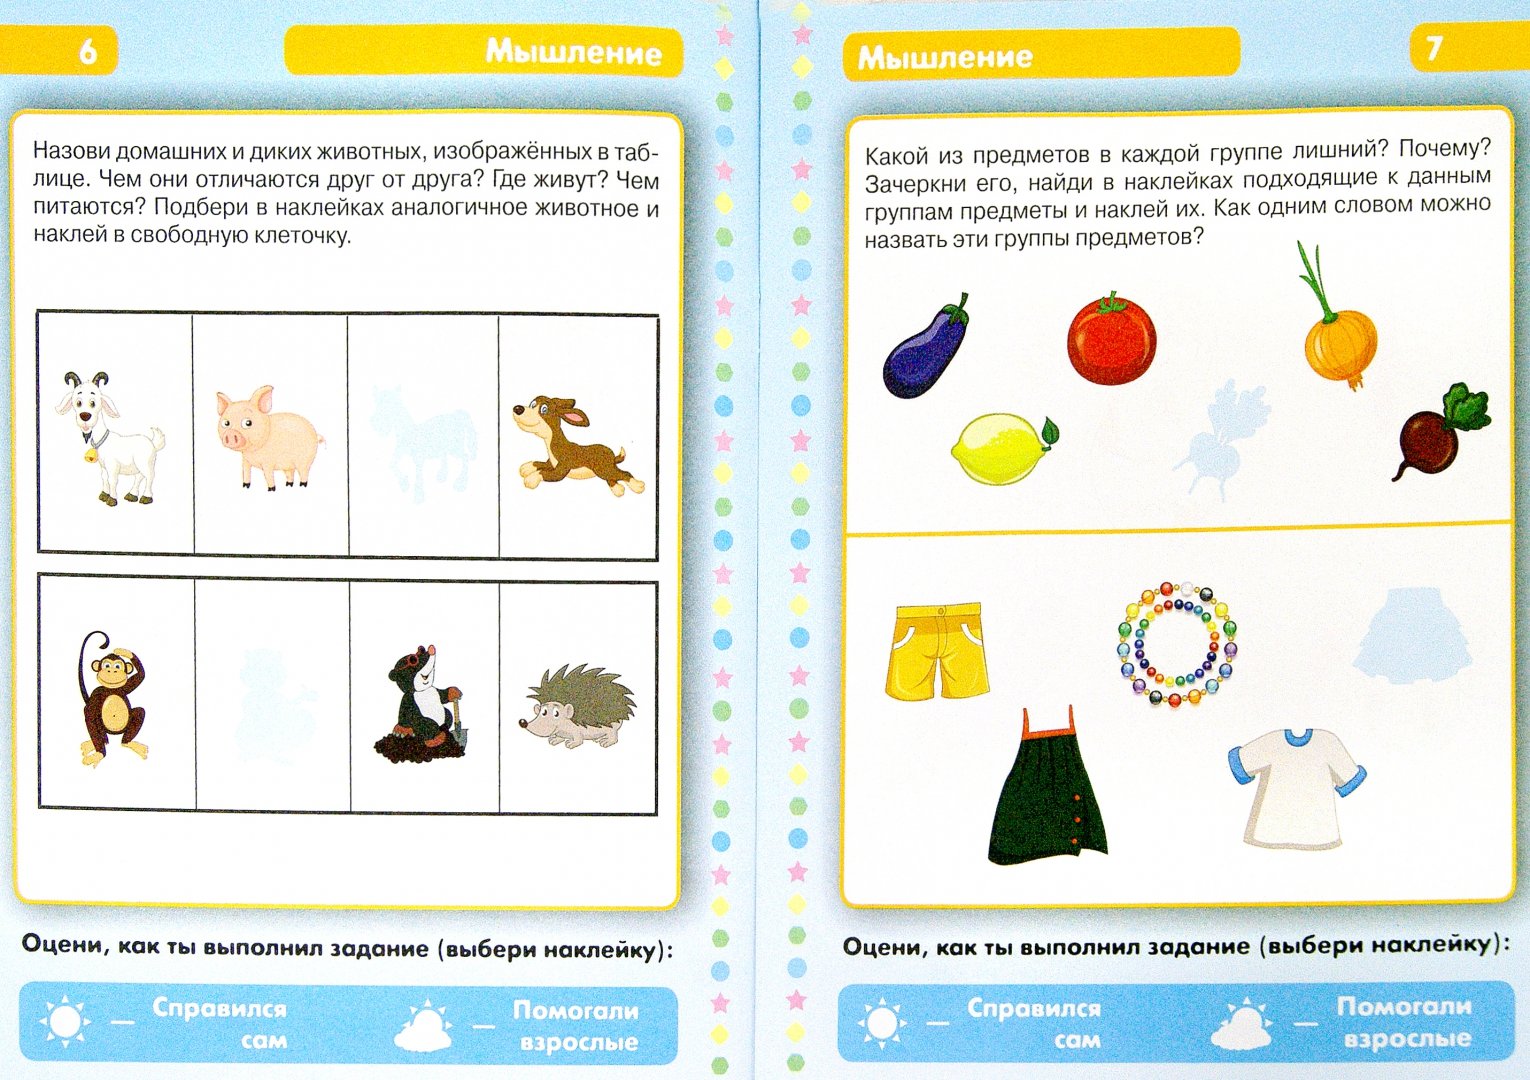 Иллюстрация 1 из 9 для Развивающие тесты для детей. 4+ - Елена Мишакова | Лабиринт - книги. Источник: Лабиринт